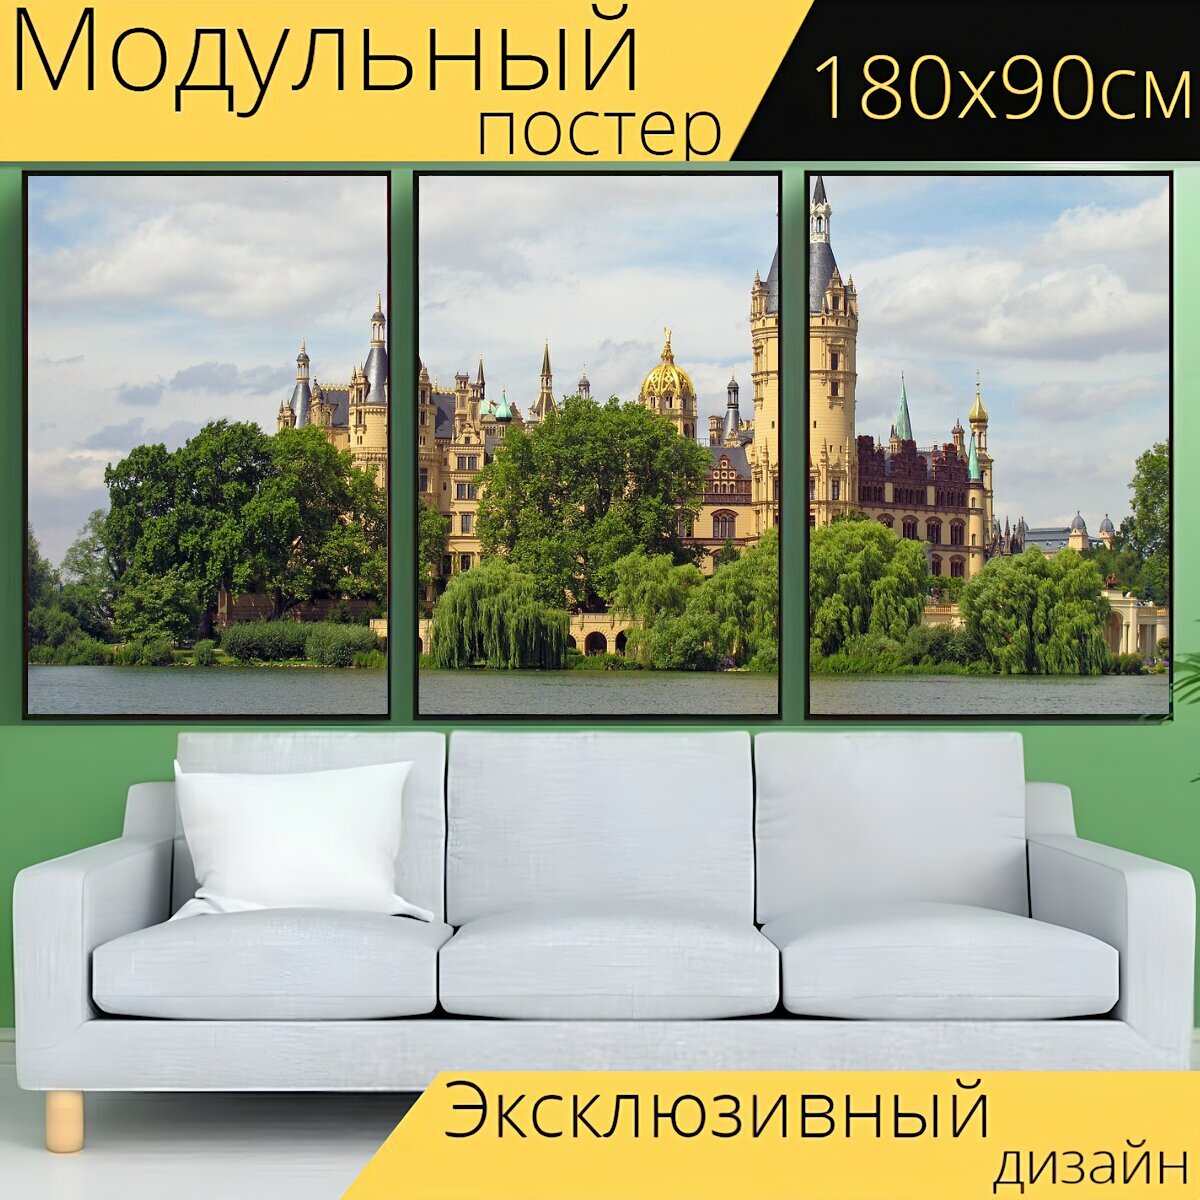 Модульный постер "Шверинский замок, озеро, шверин" 180 x 90 см. для интерьера